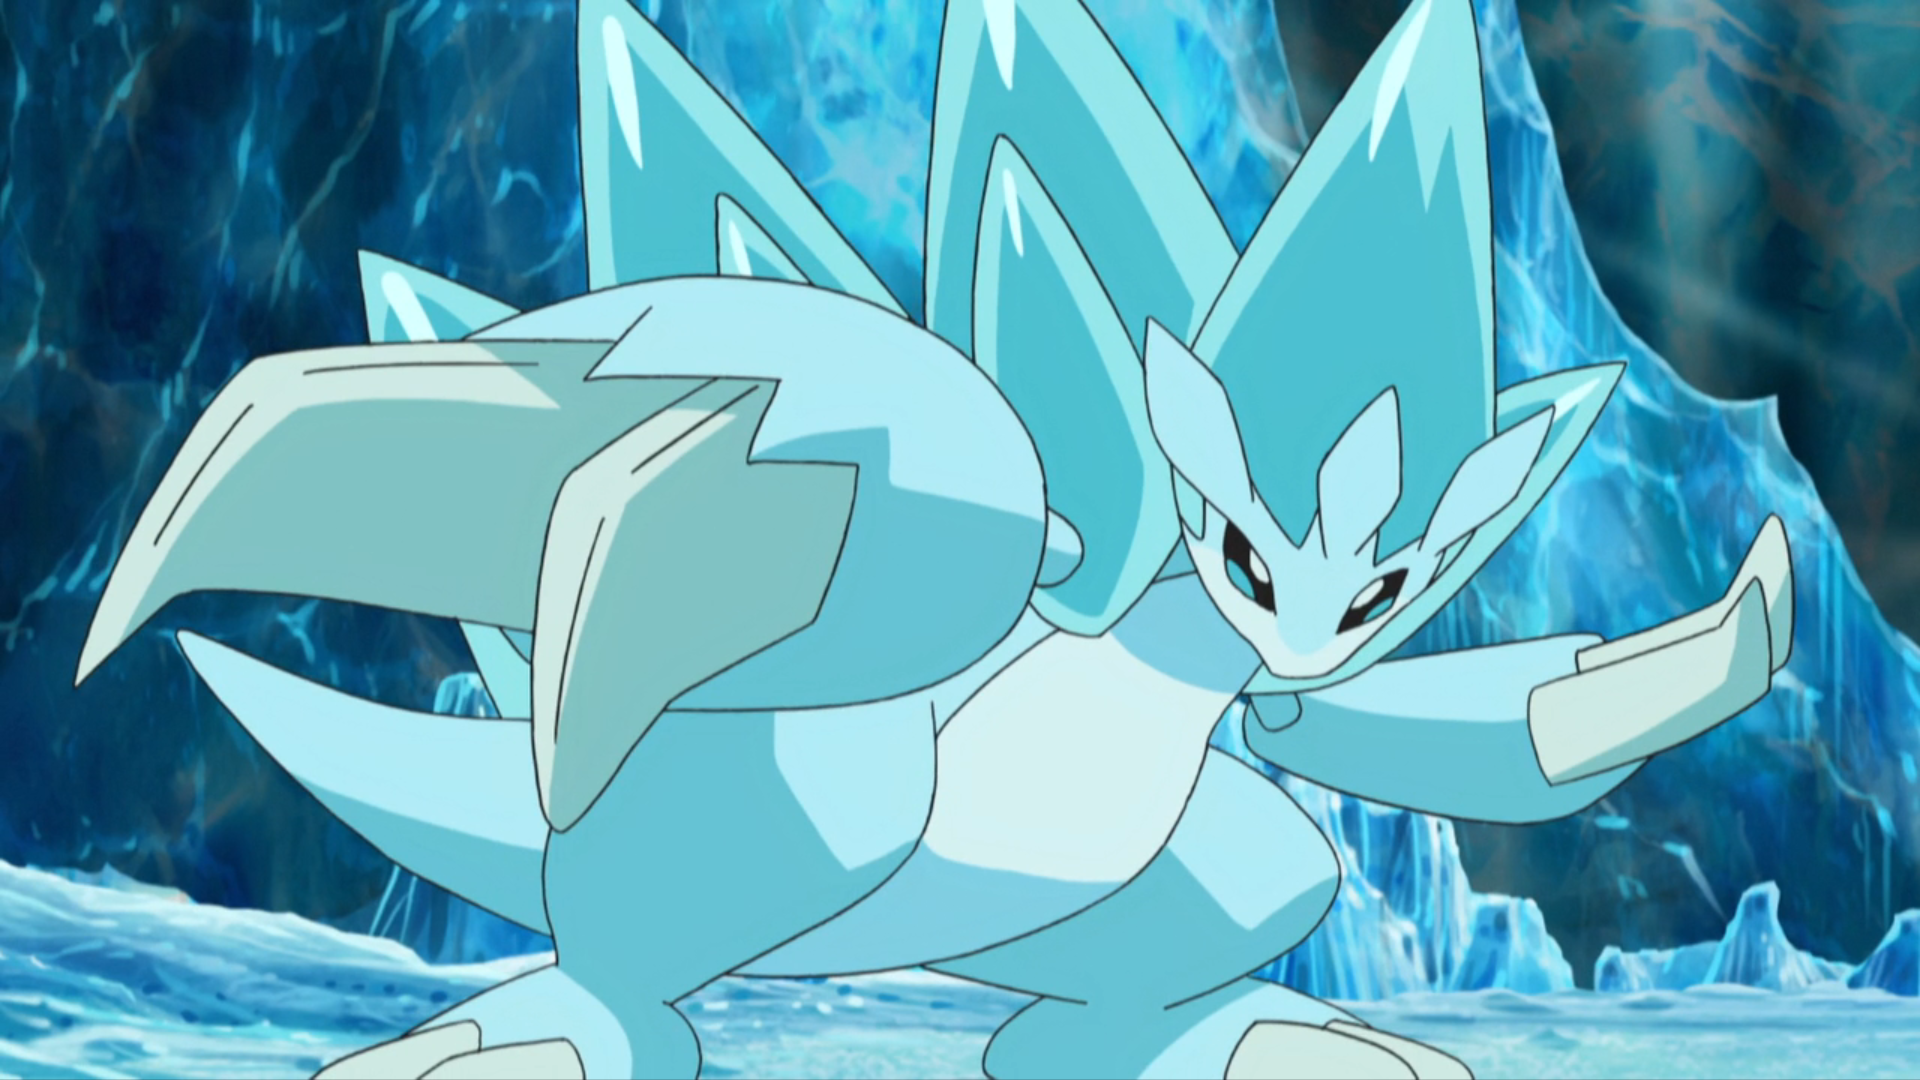 Popplio es un Pokémon de tipo agua introducido en la séptima generación. Es  el Pokémon inicial de tipo agua…